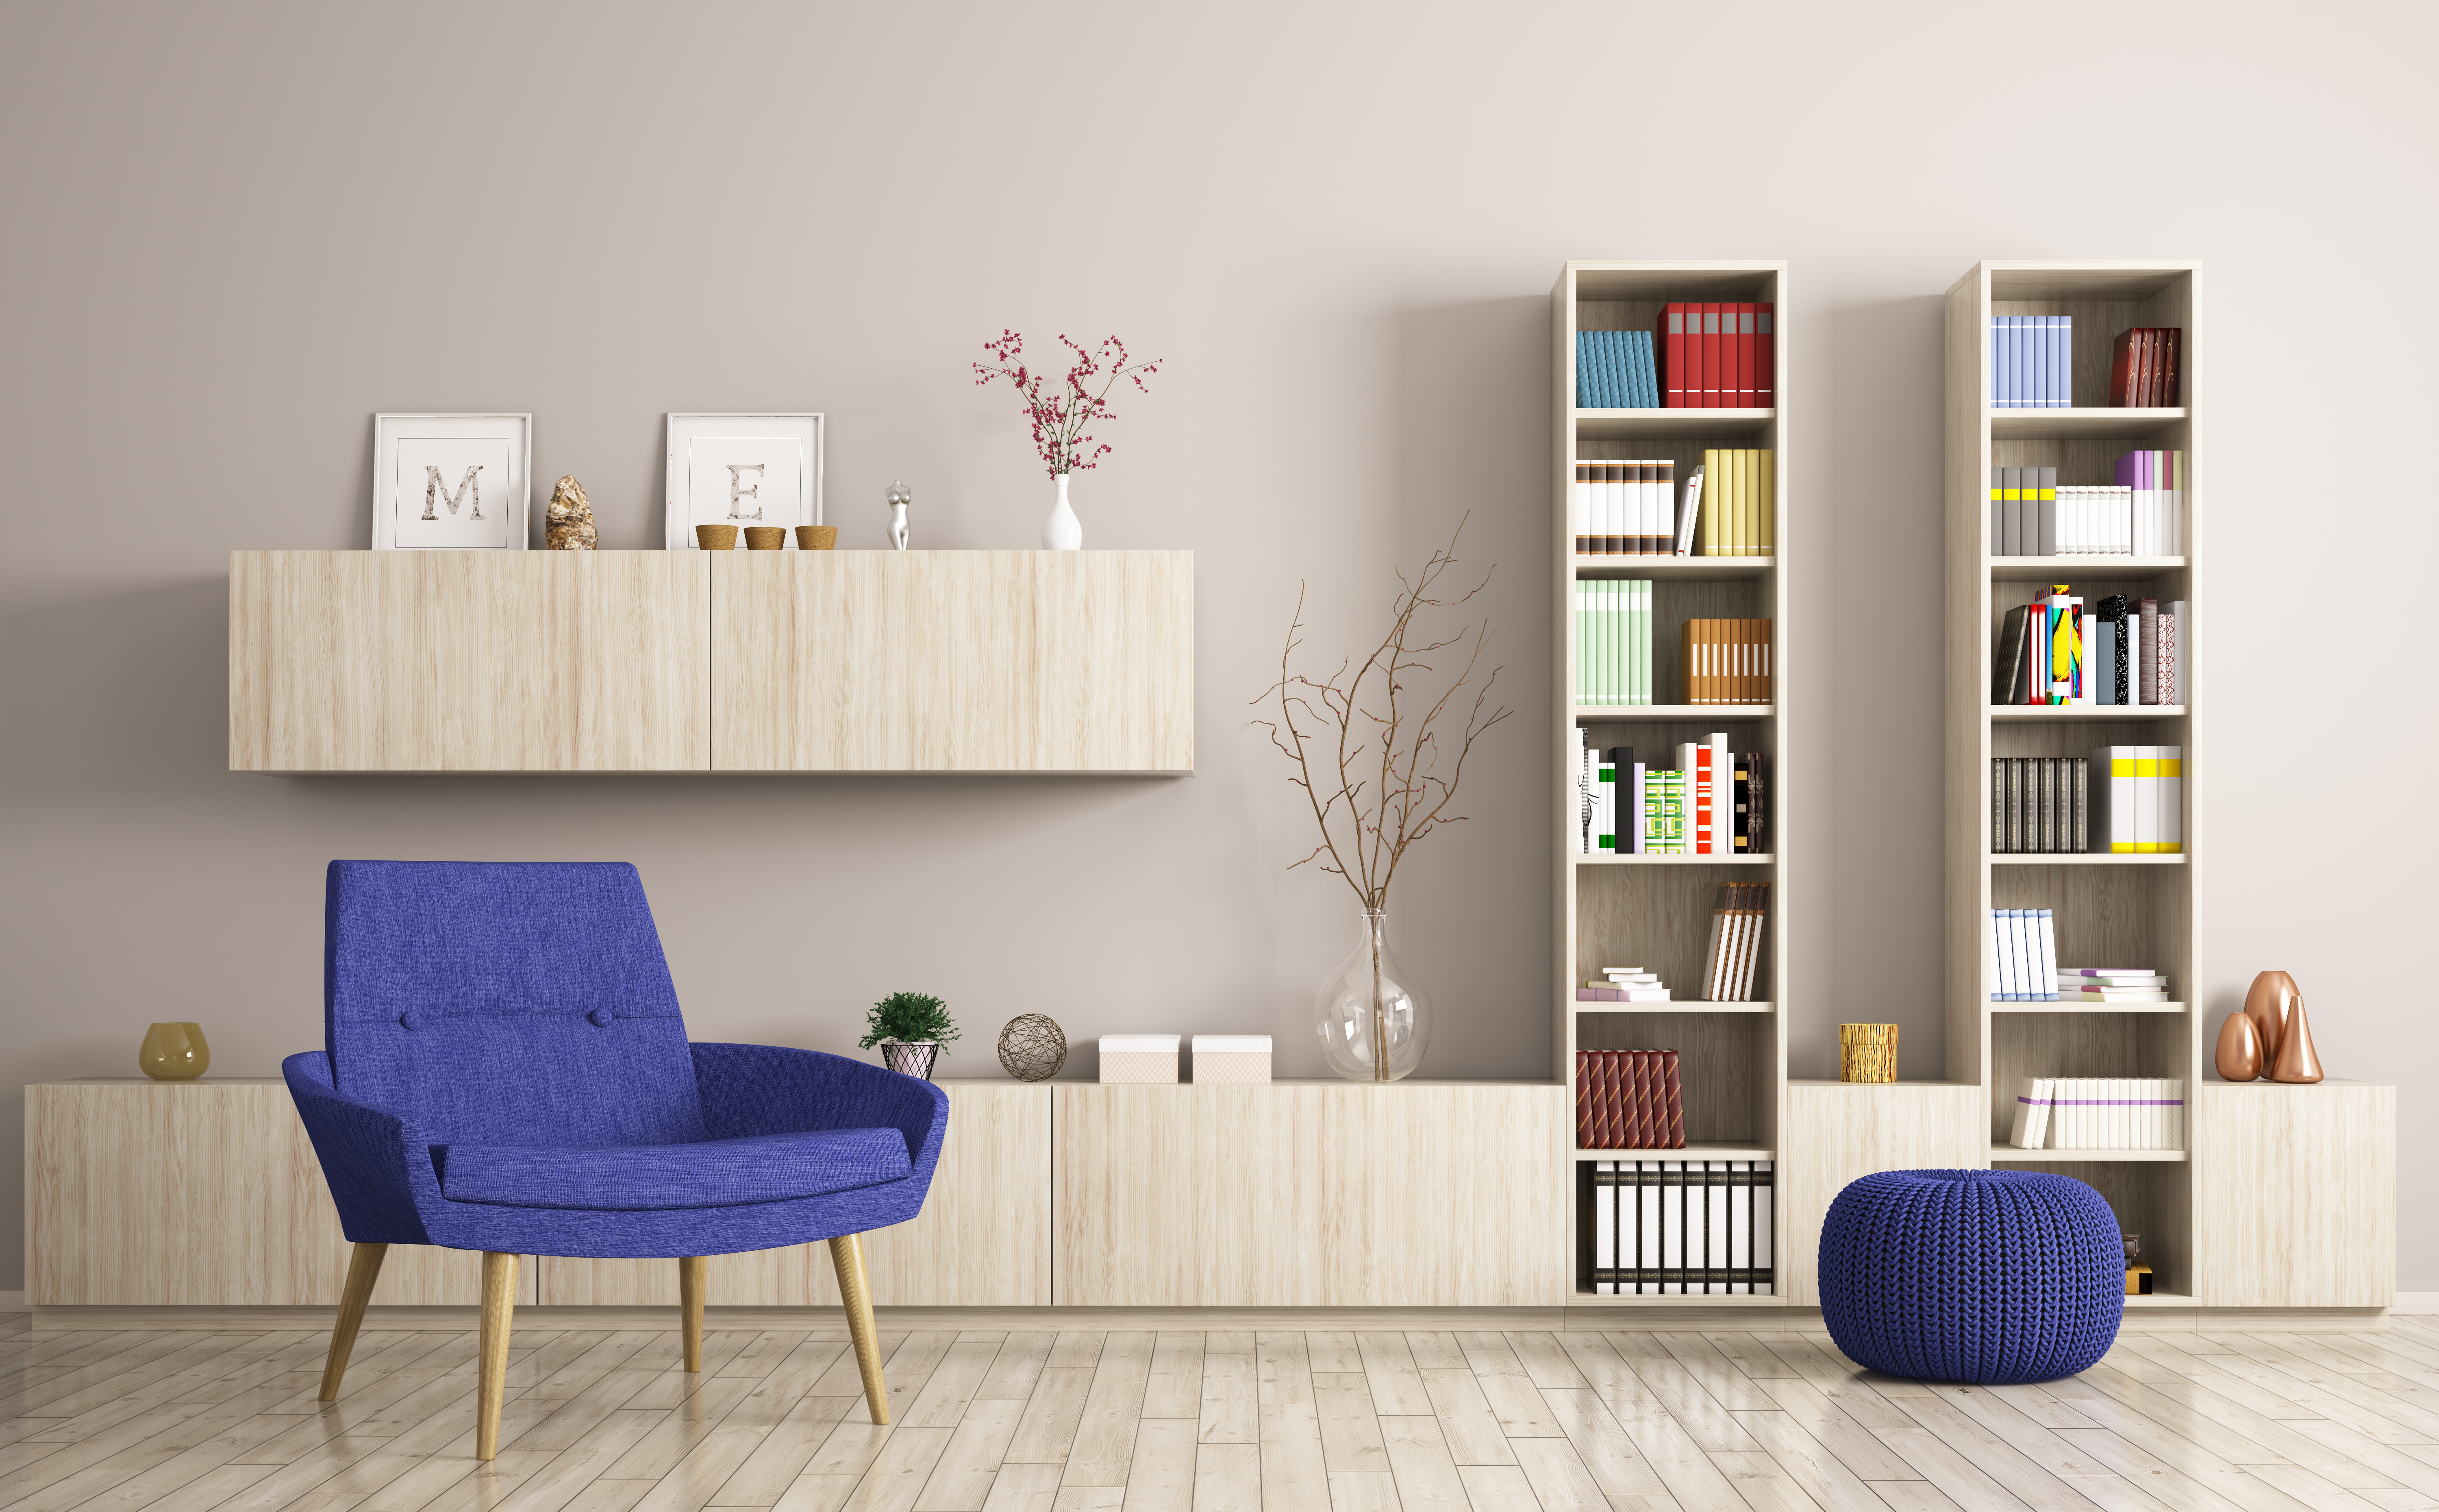 Wall Showcase Design Ideas for Living Room - HomeLane Blog